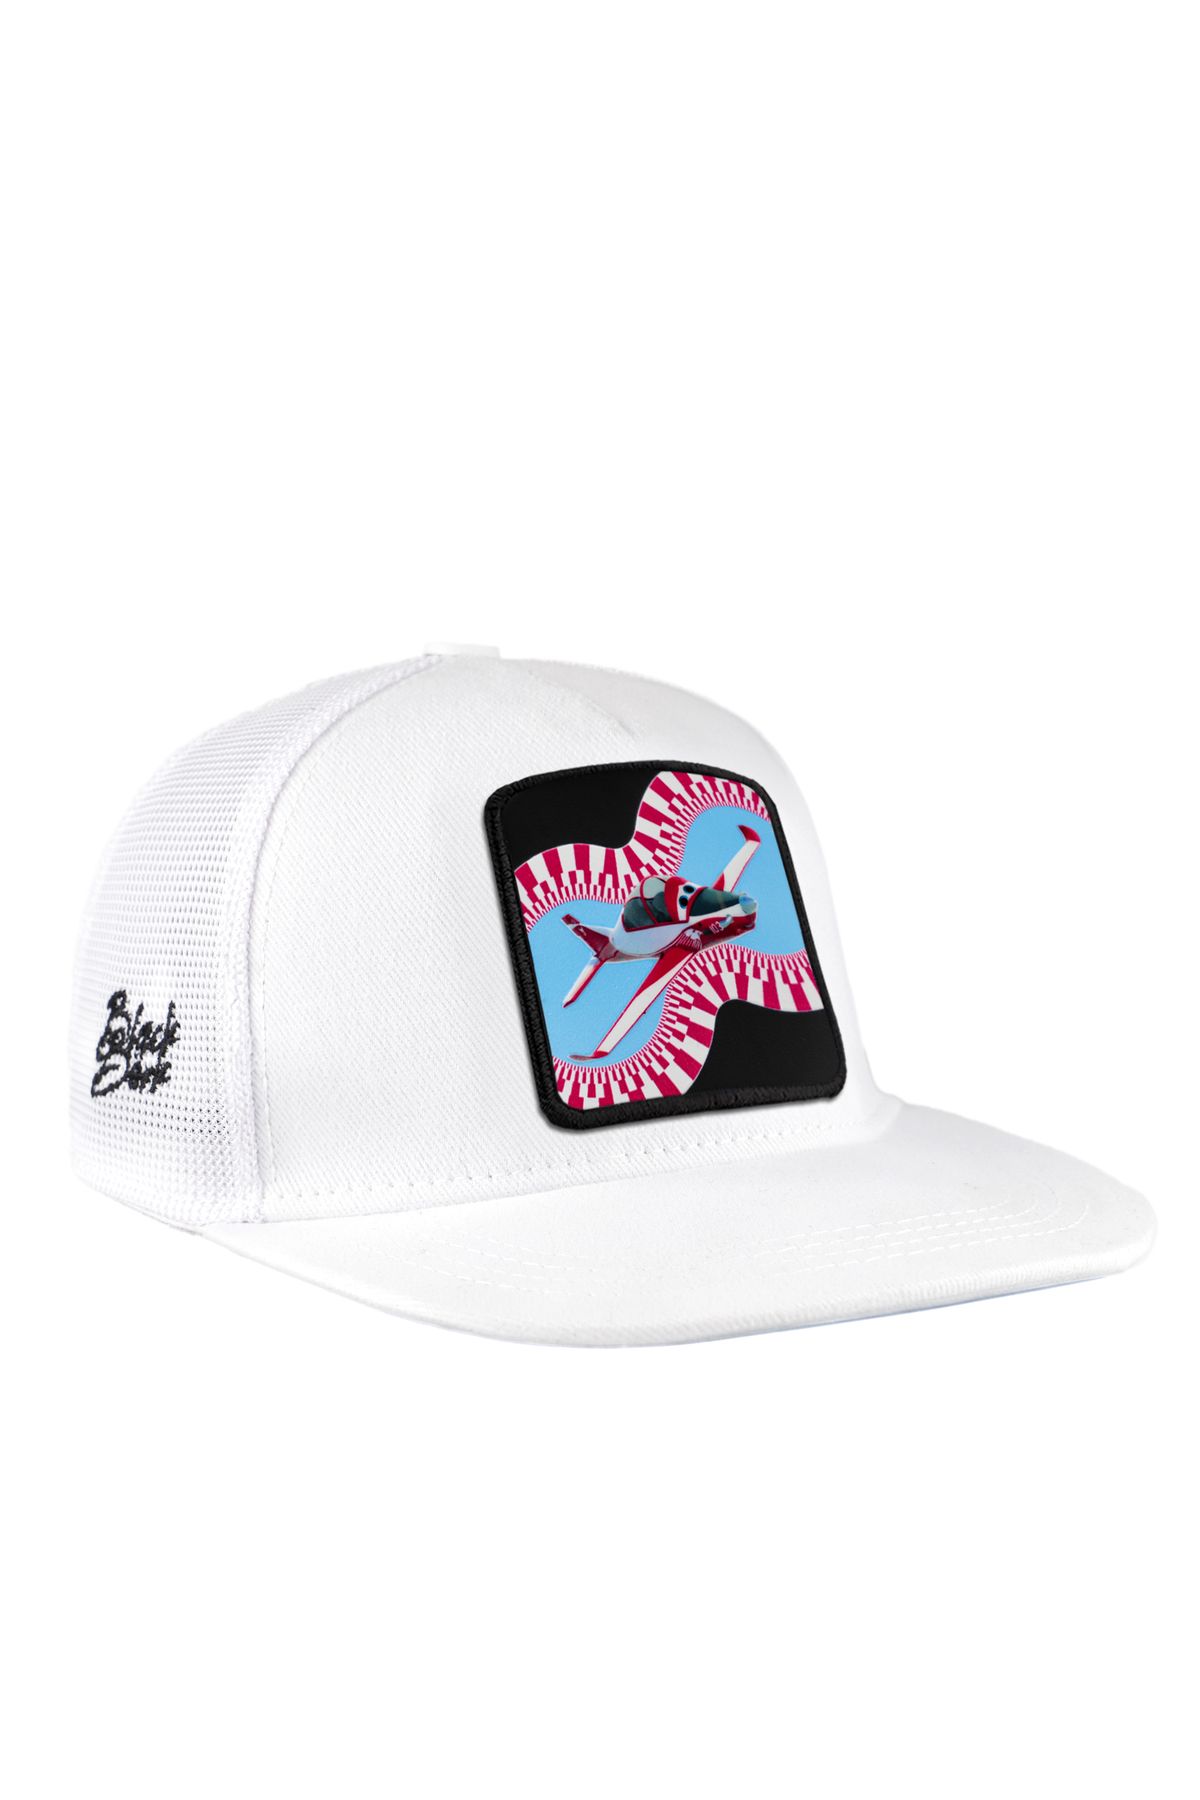 BlackBörk V1 Trucker Hip Hop Kids Akış Hürkuş Lisanlı Beyaz Çocuk Şapka